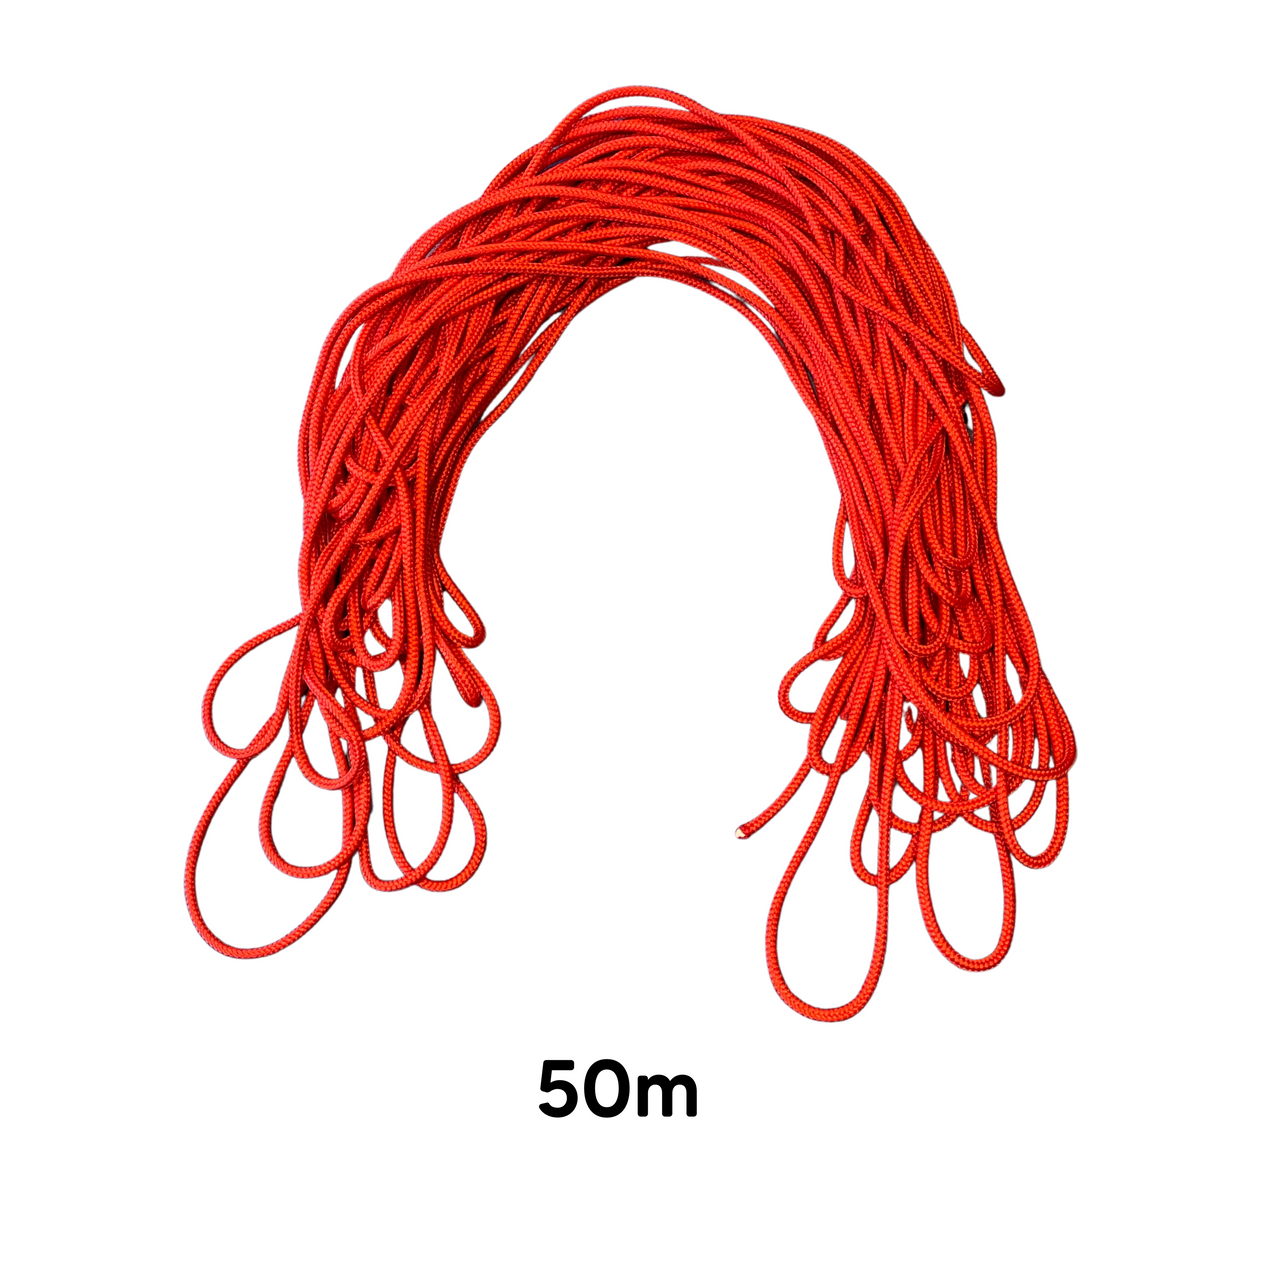 Corde - corde thérapeutique - "fil rouge" - 15m